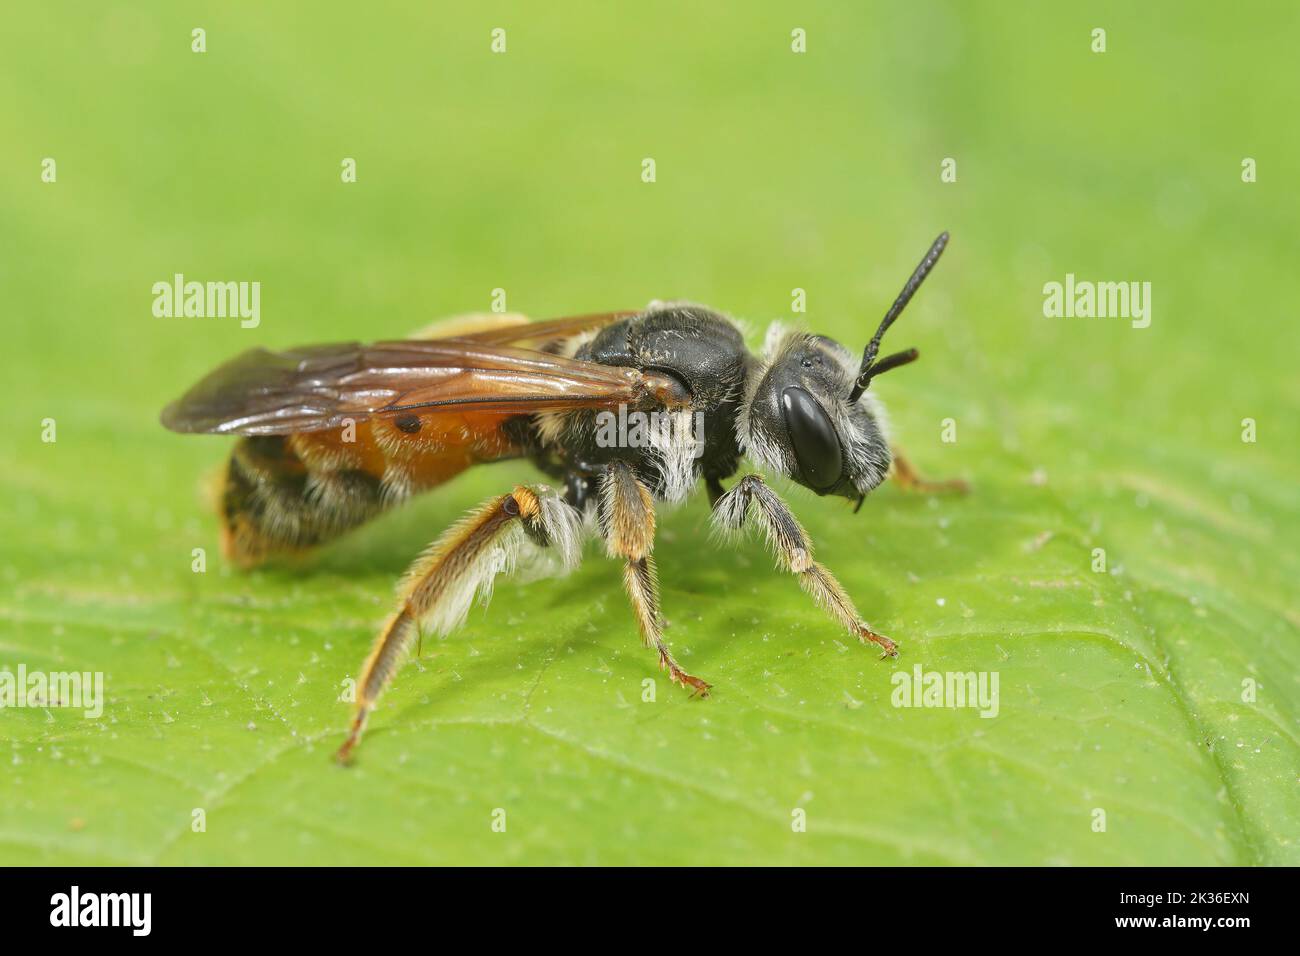 Gros plan détaillé sur une grande abeille minière scabieuse femelle, Andrena hattfiana, assise sur une feuille verte Banque D'Images